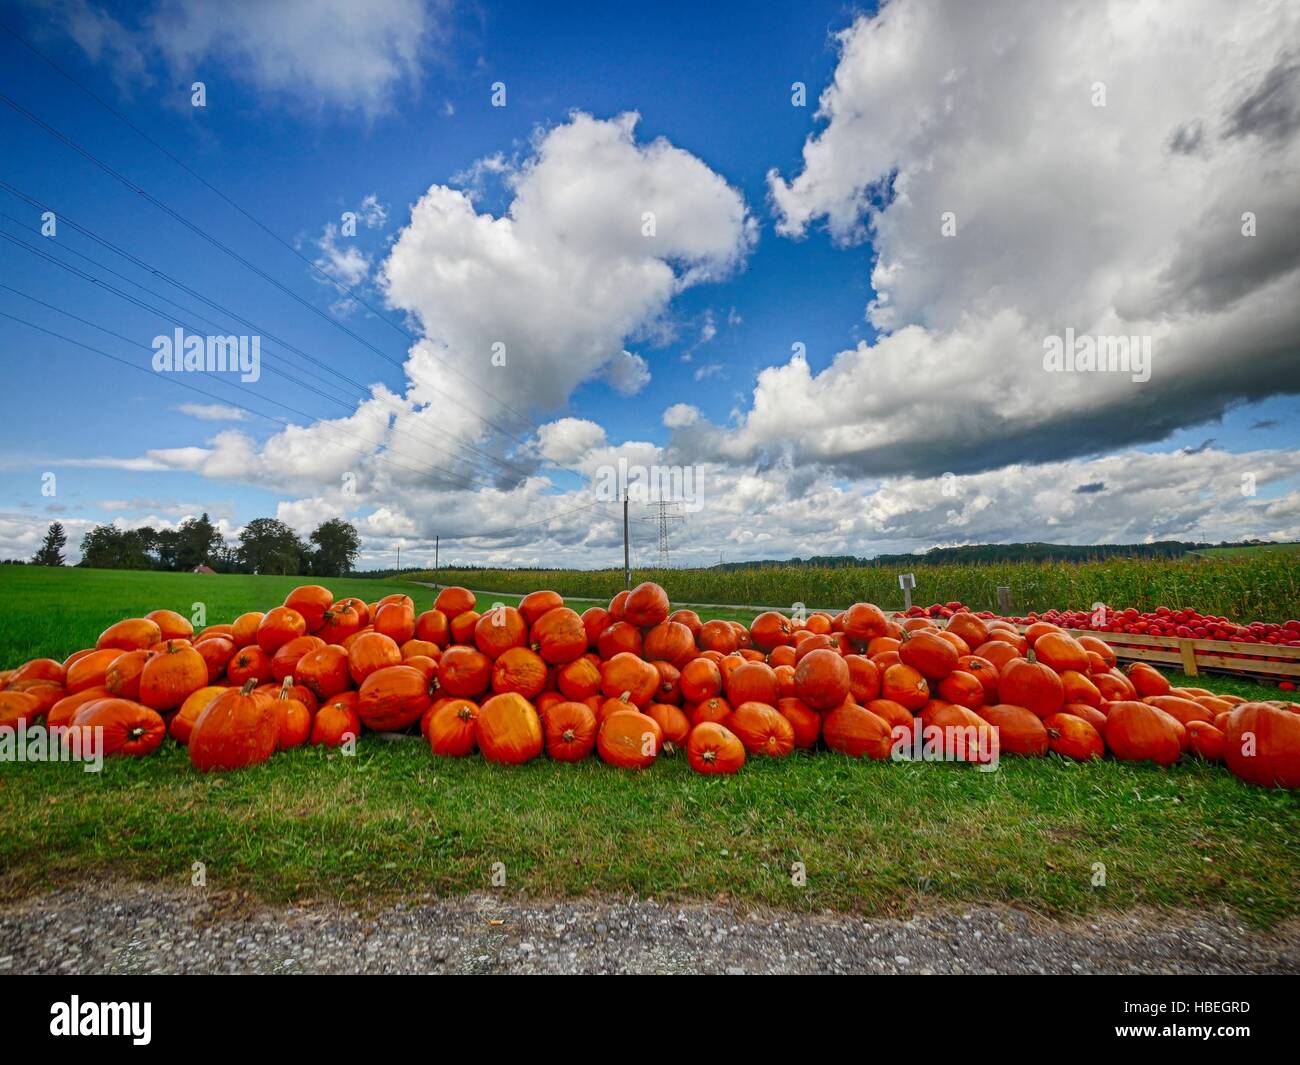 Orange Helloween pumpkins outdoors Stock Photo